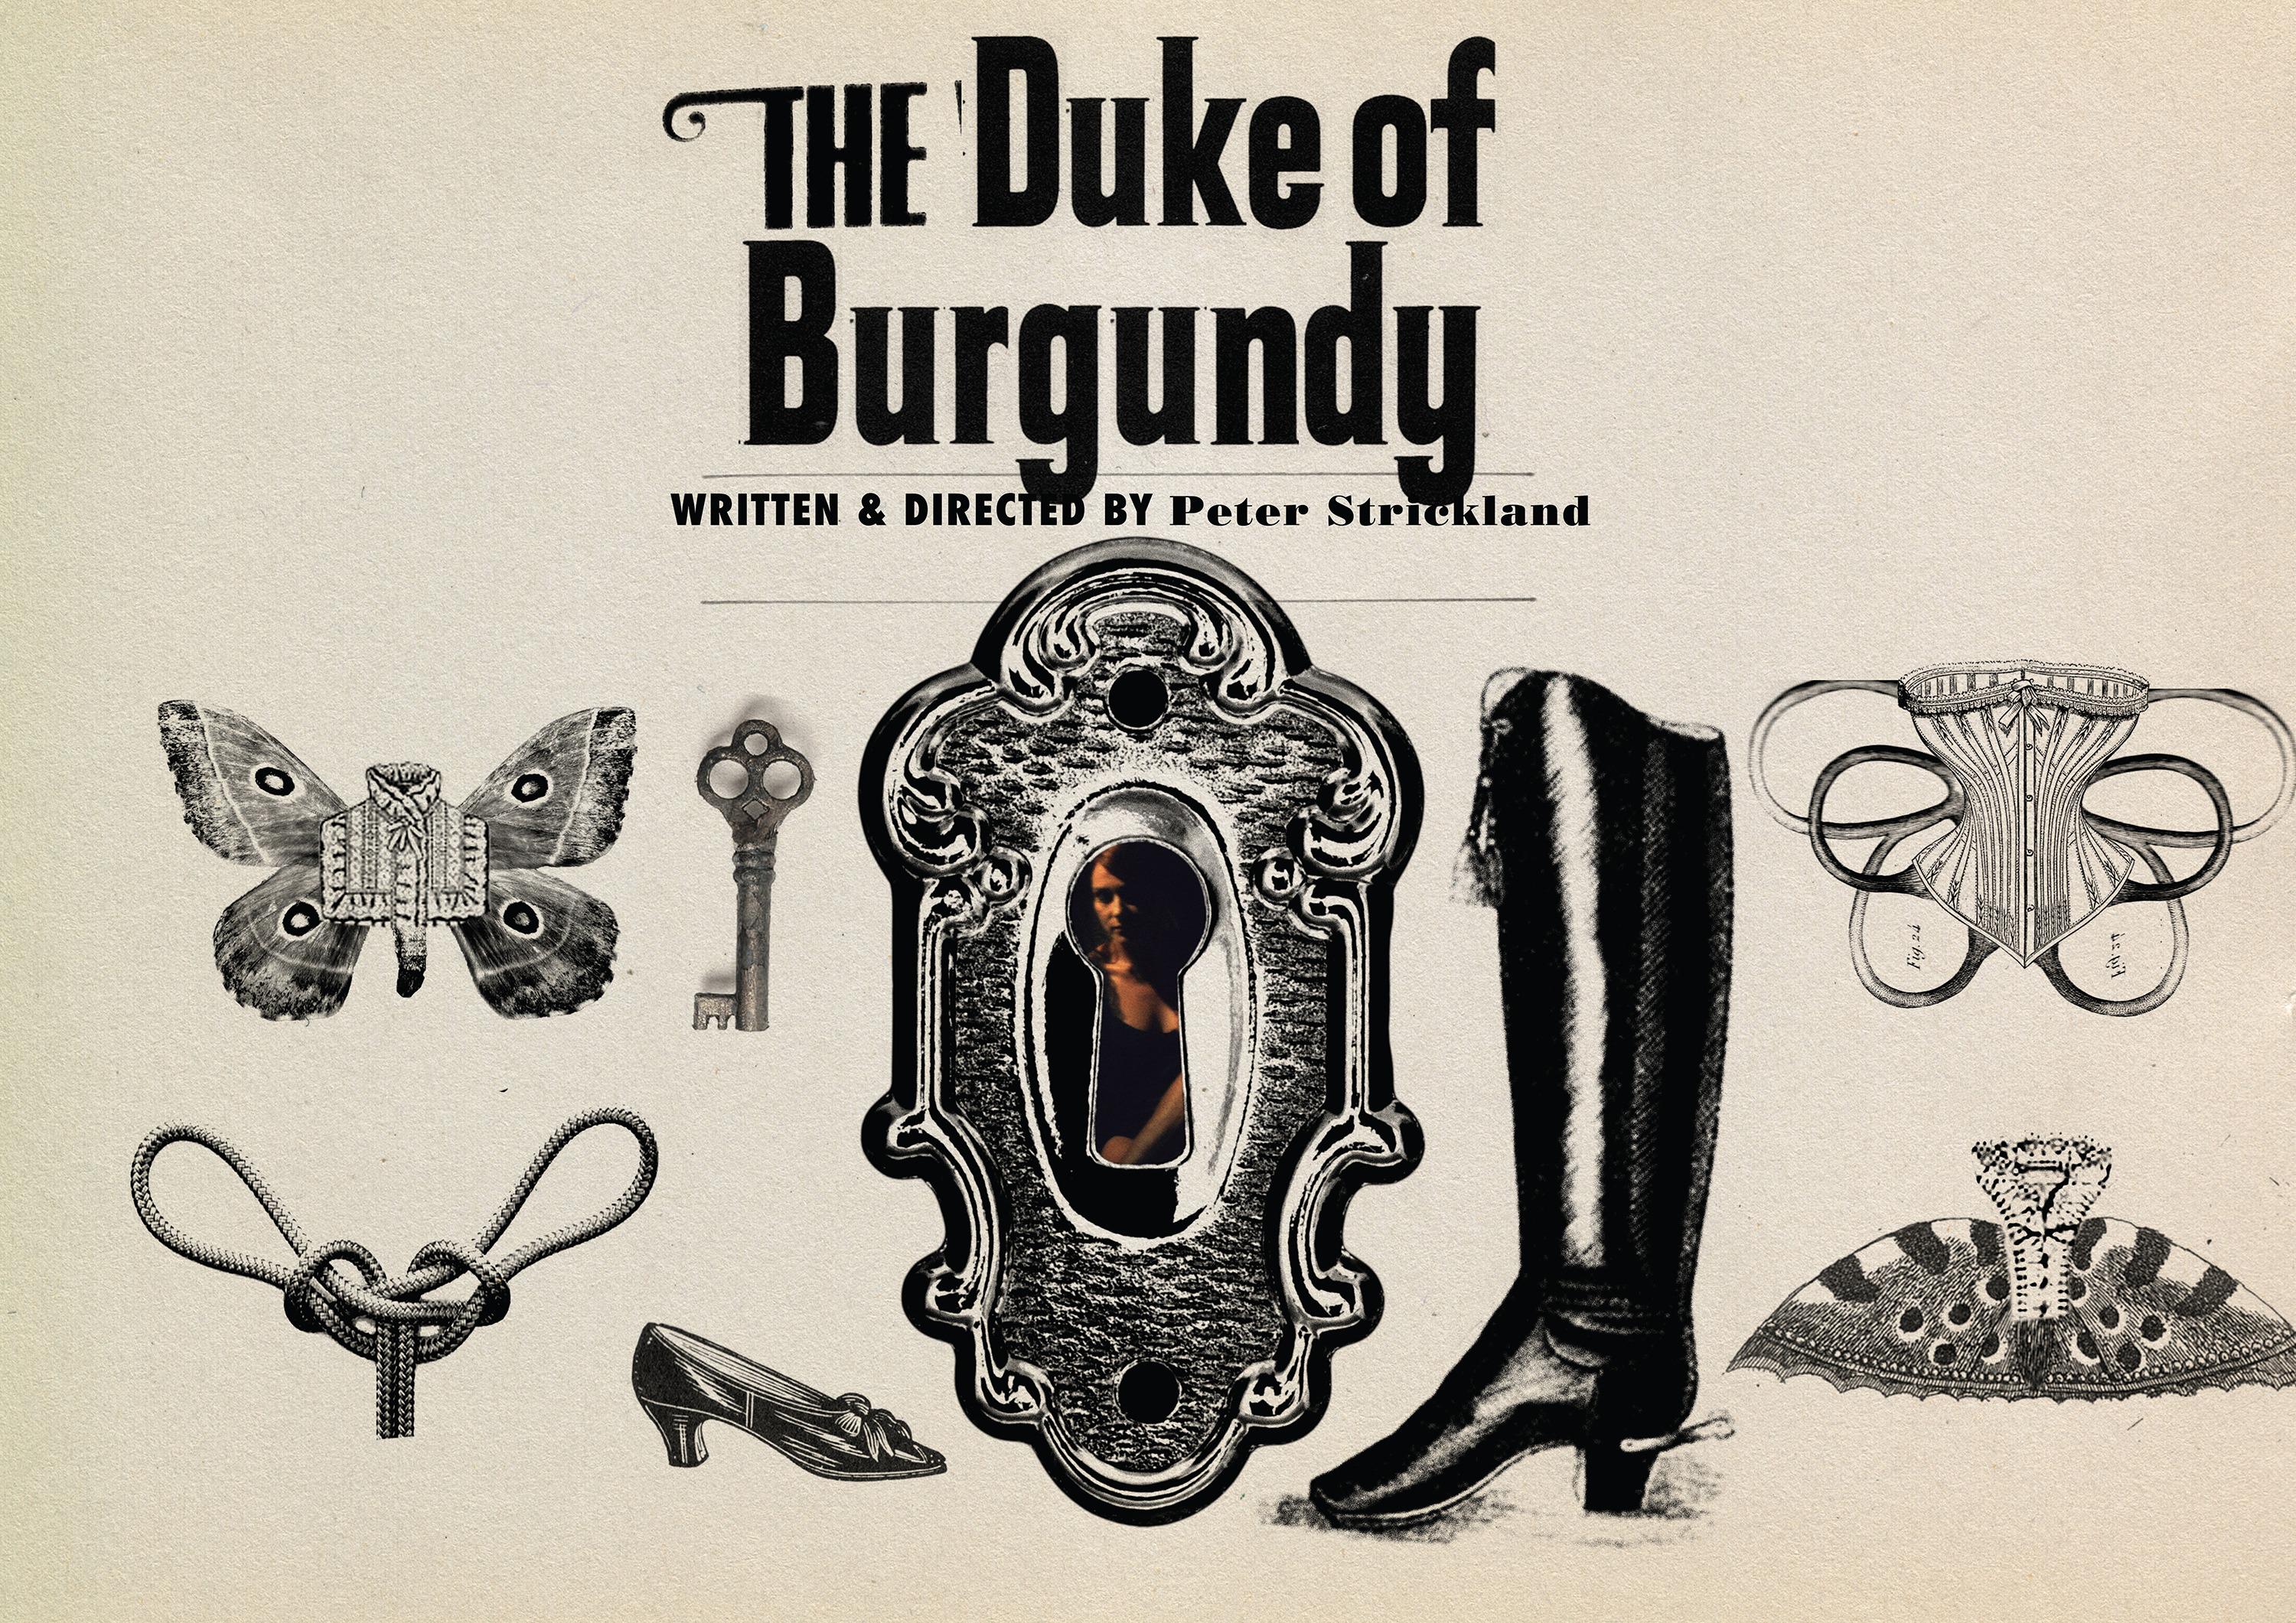 Erotic movie the duke of burgundy 2015